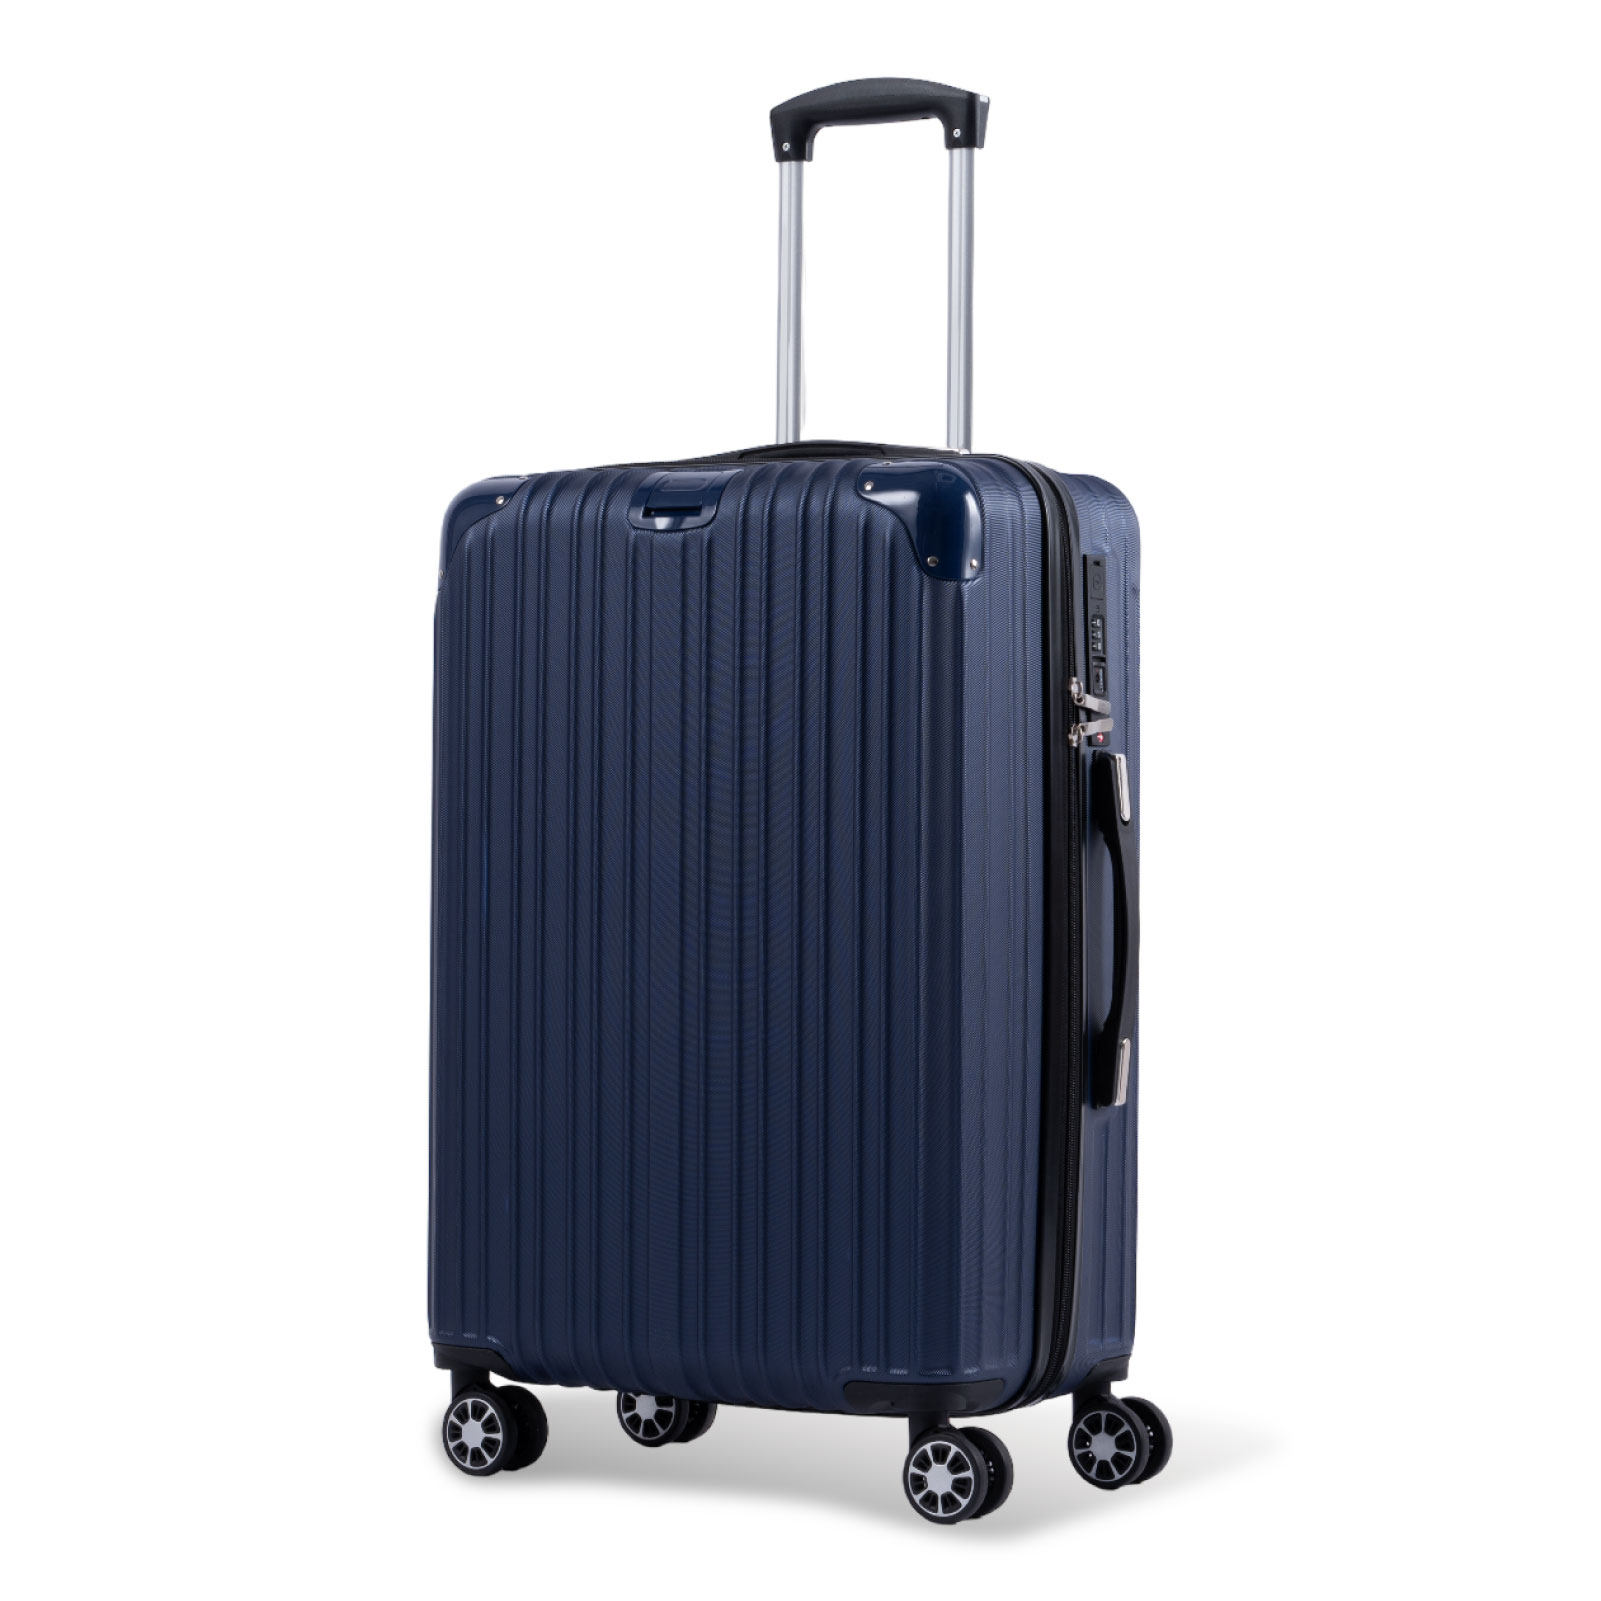 スーツケース USBポート付き キャリーケース Lサイズ キャリーバッグ 7カラー選ぶ 7-14日用 泊まる 軽量 360度回転 大容量 ファスナー式  ビジネス 出張 sc113-28